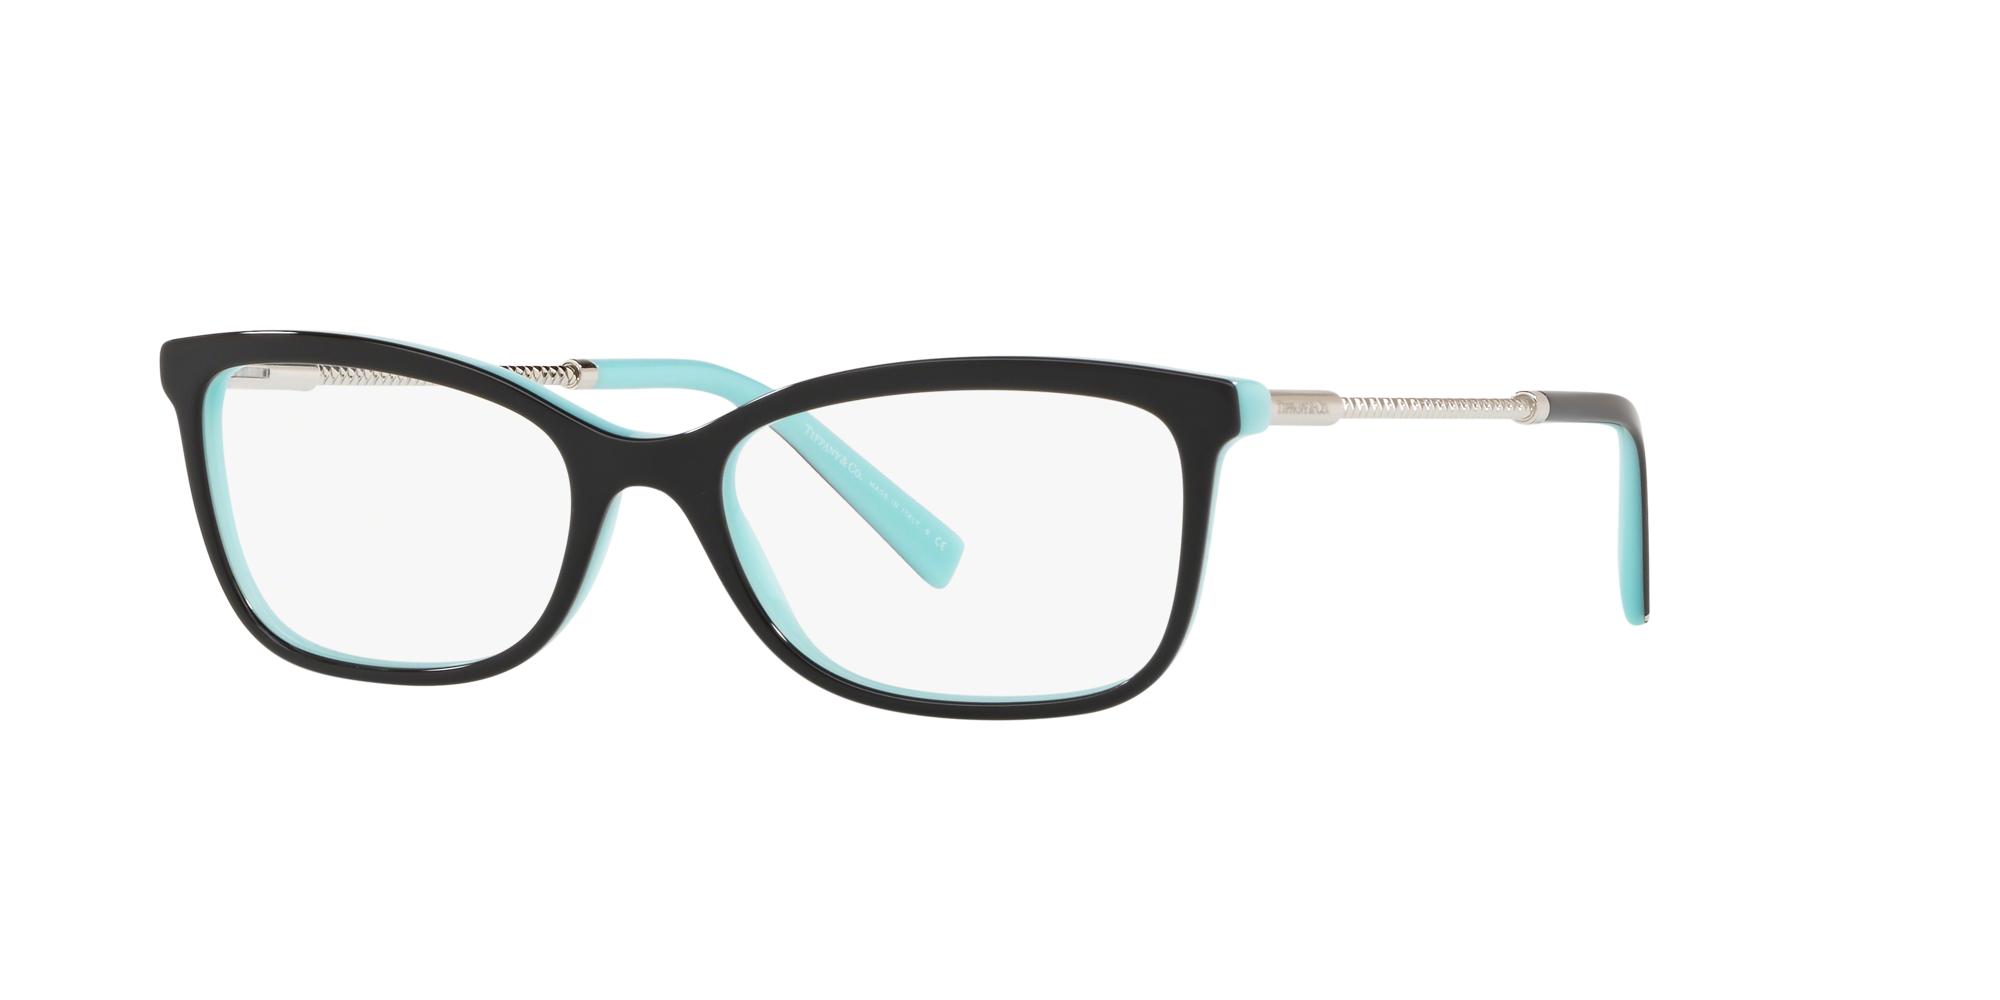 tiffany eyeglass frames warranty